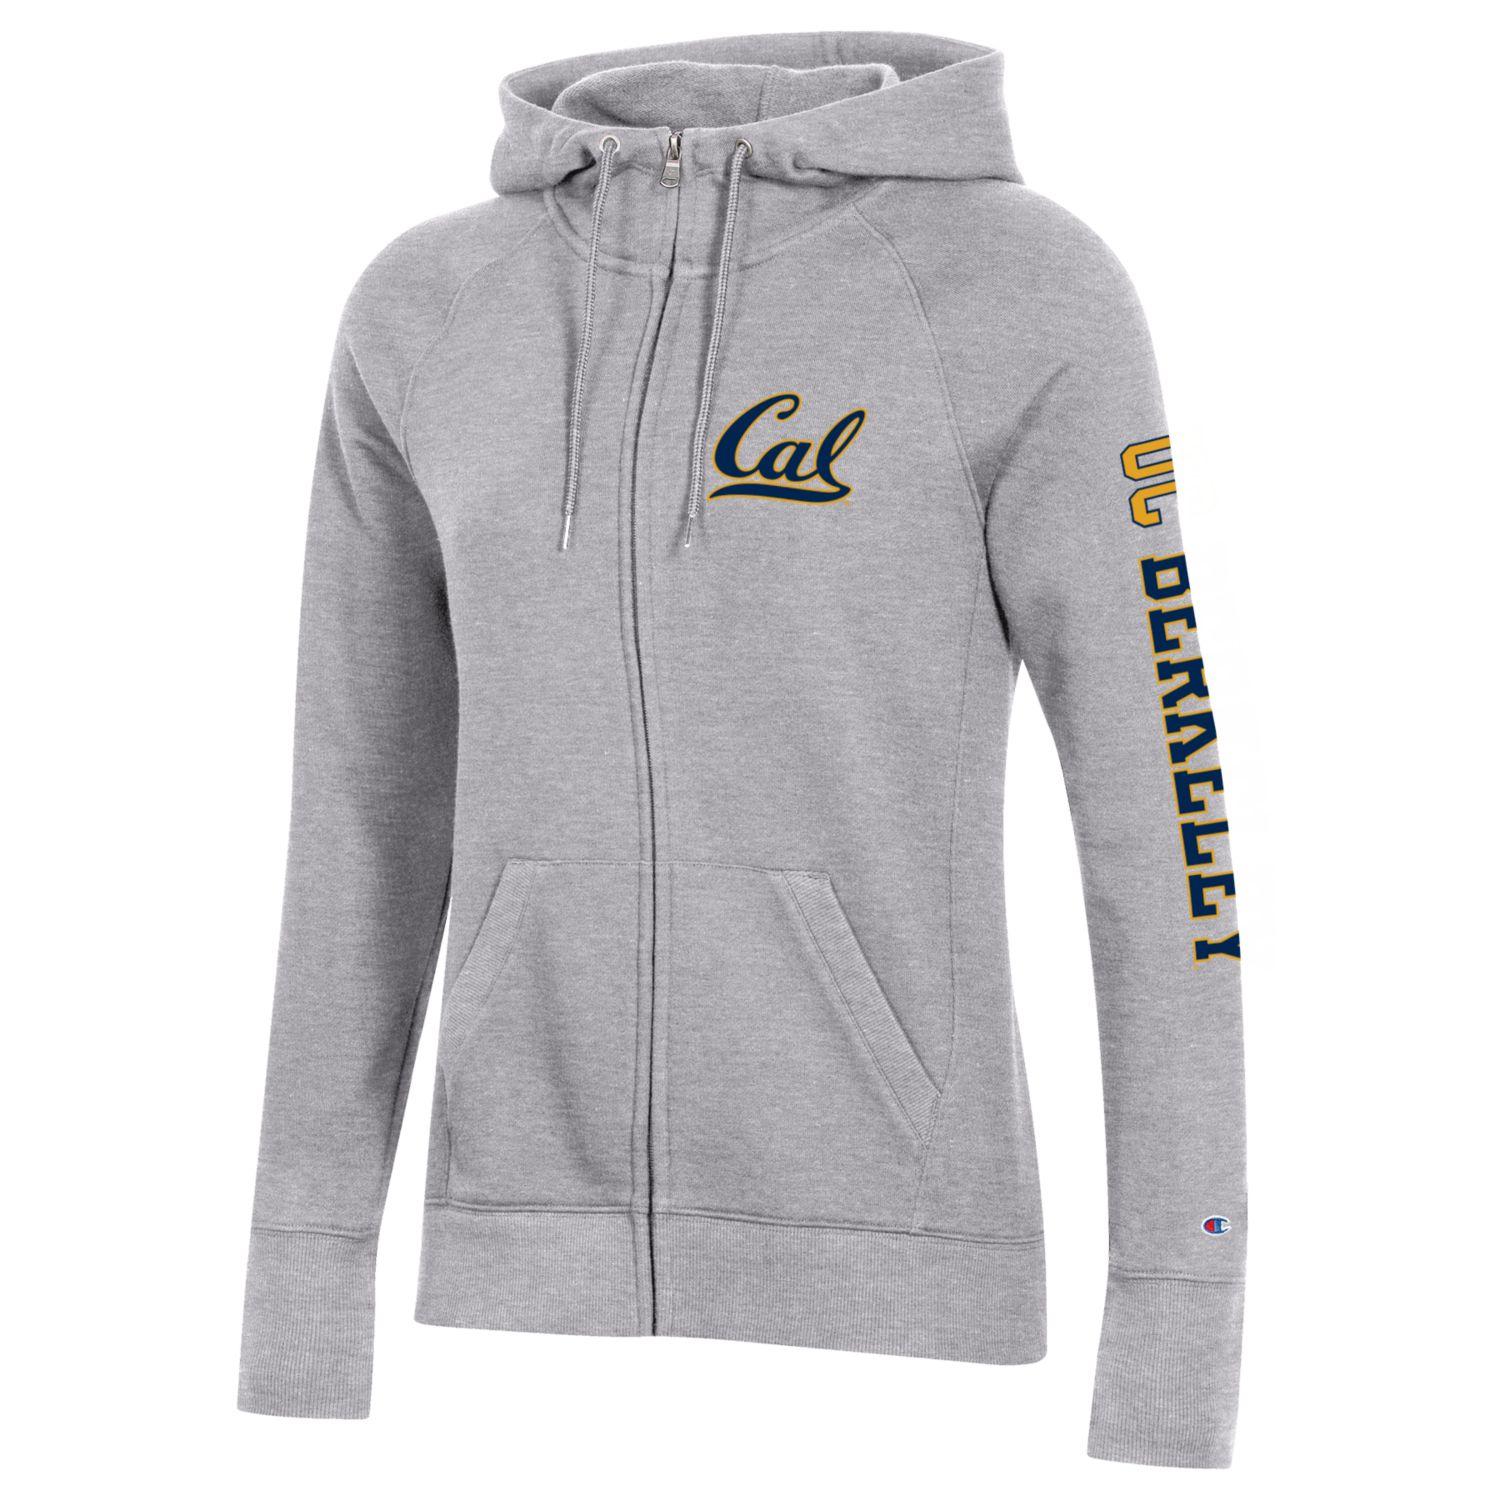 U.C. Berkeley bold Cal women's zip-up hoodie sweatshirt-Gray-Shop College Wear